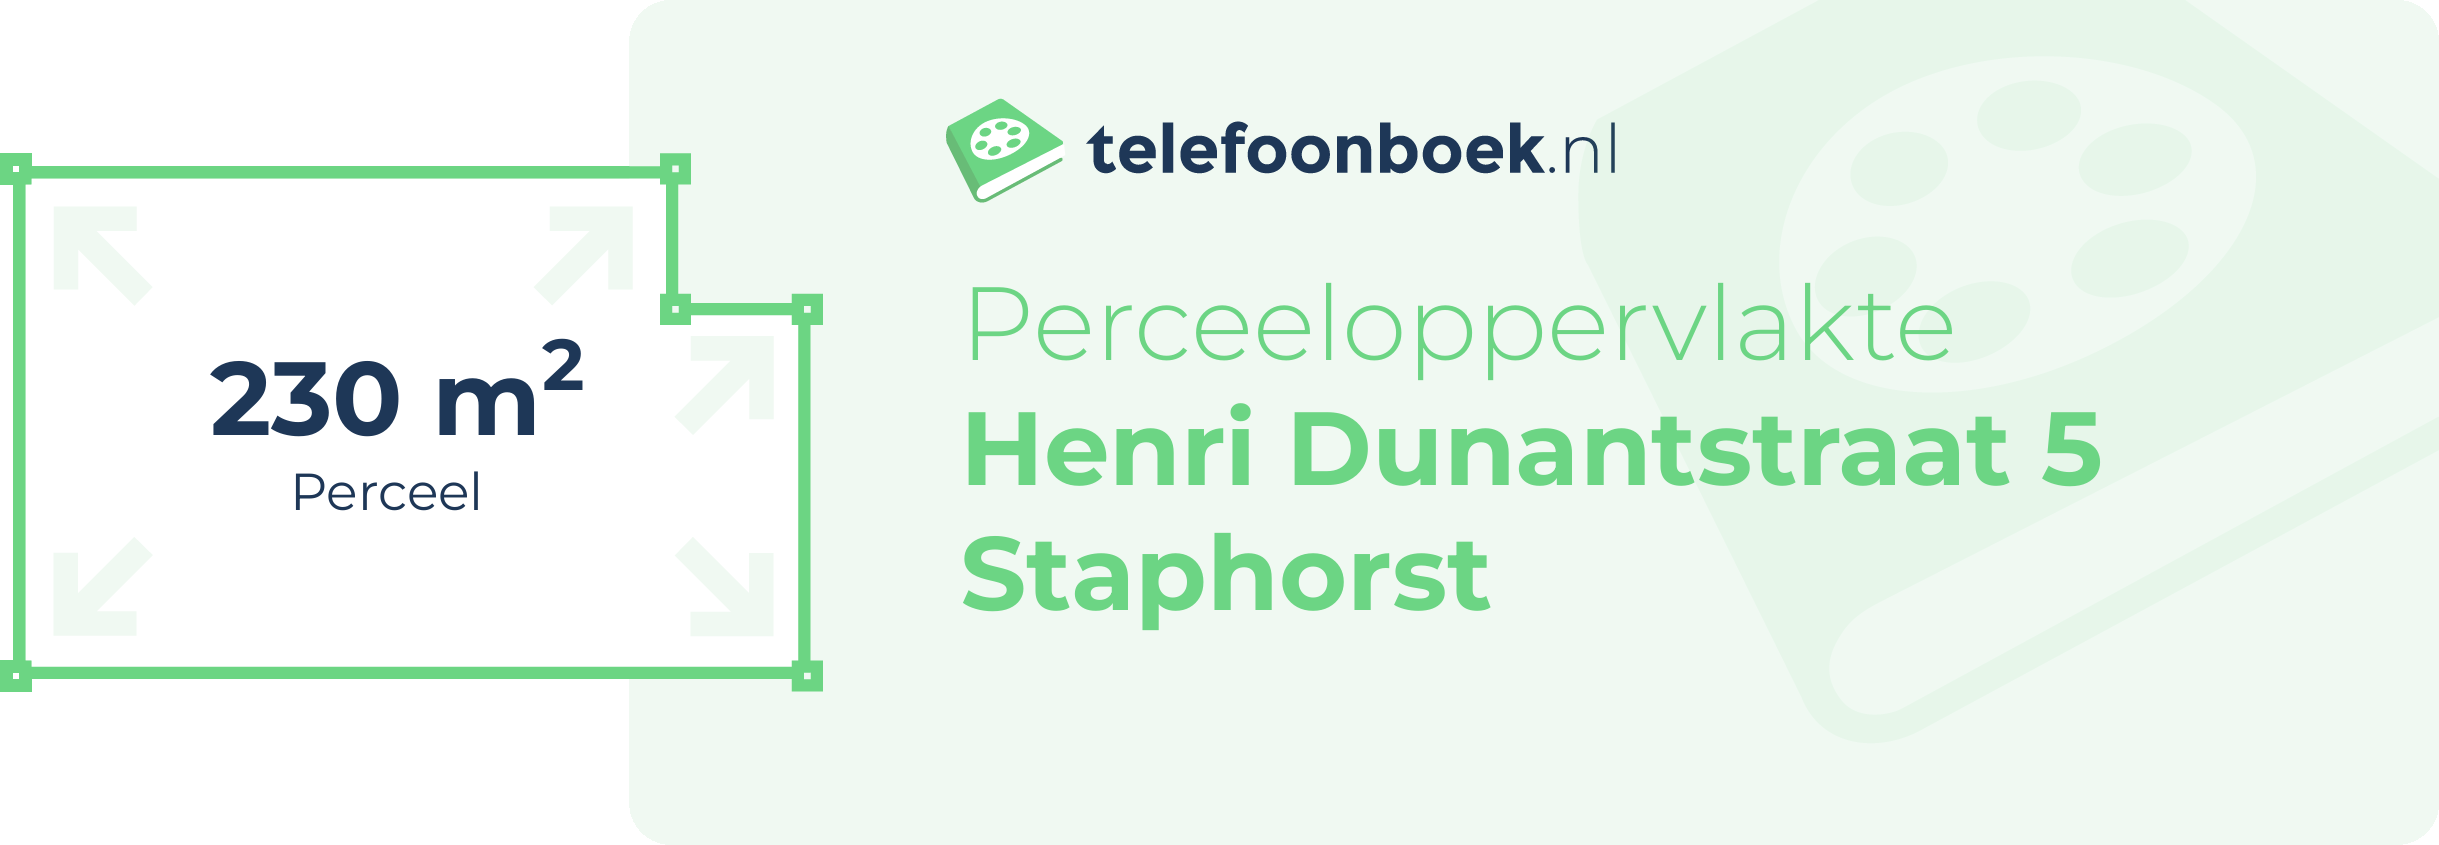 Perceeloppervlakte Henri Dunantstraat 5 Staphorst